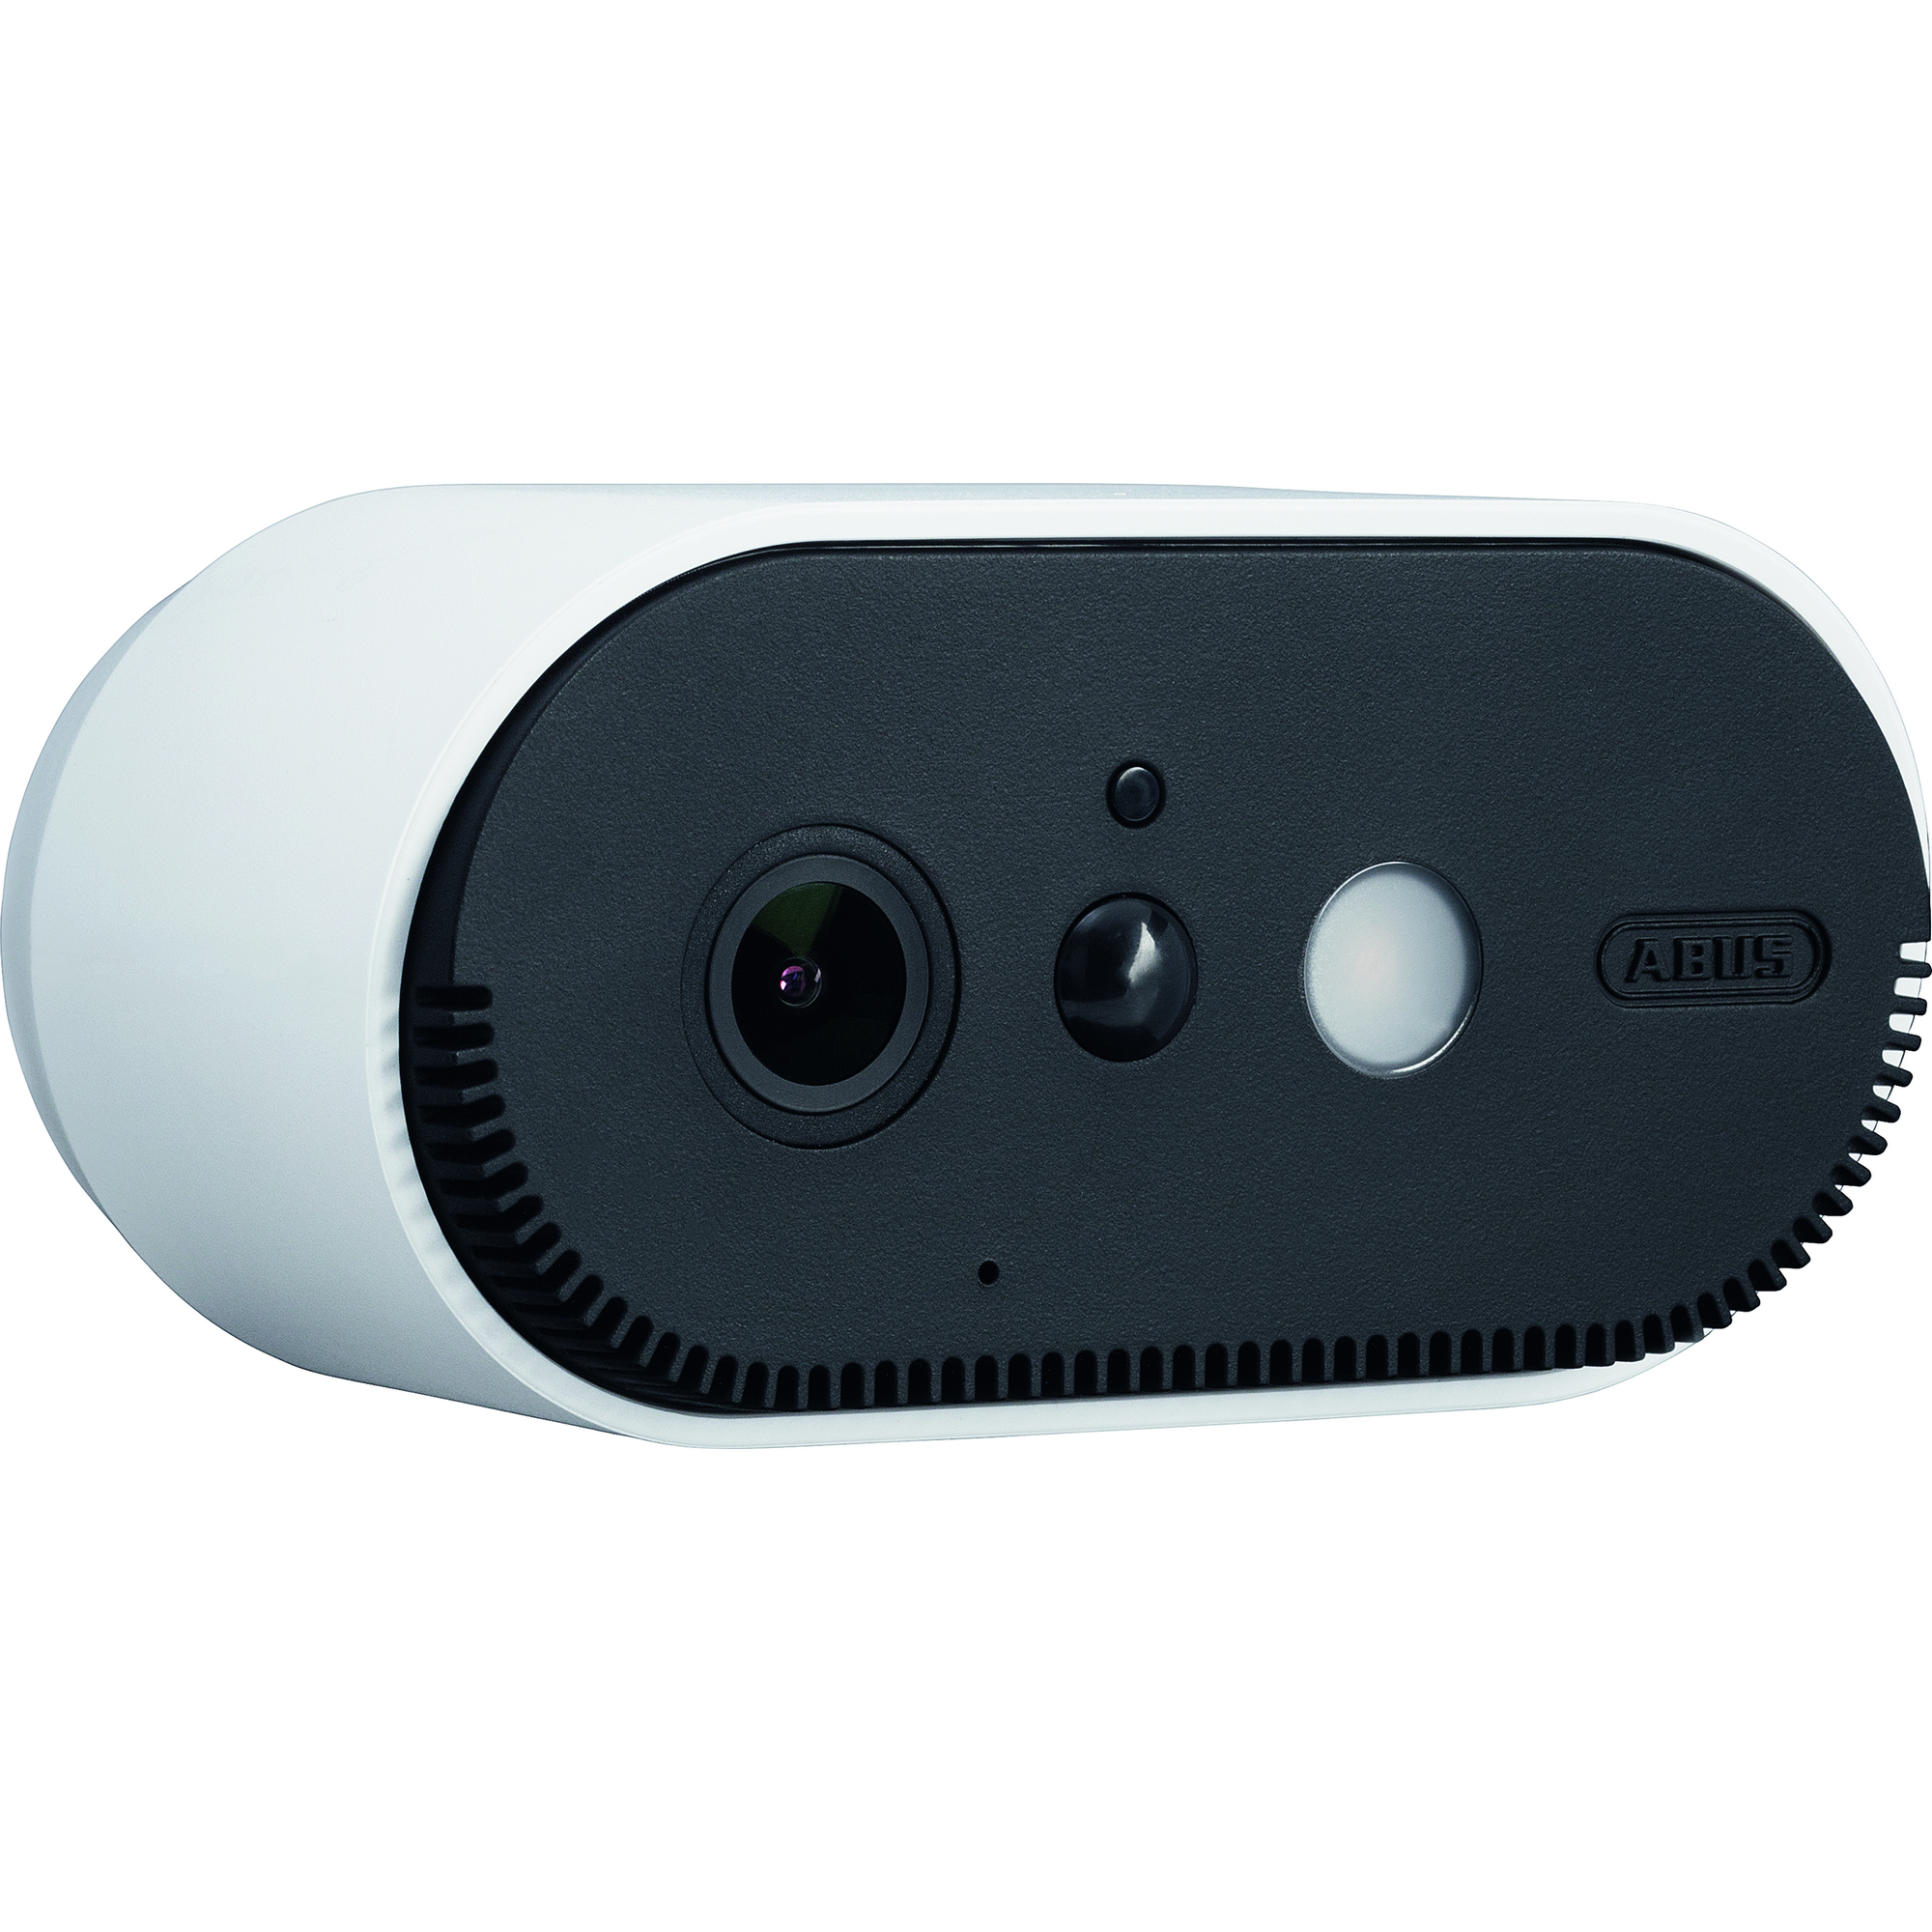 Zusatz Akku-Überwachungskamera 'PPIC90520' + product picture